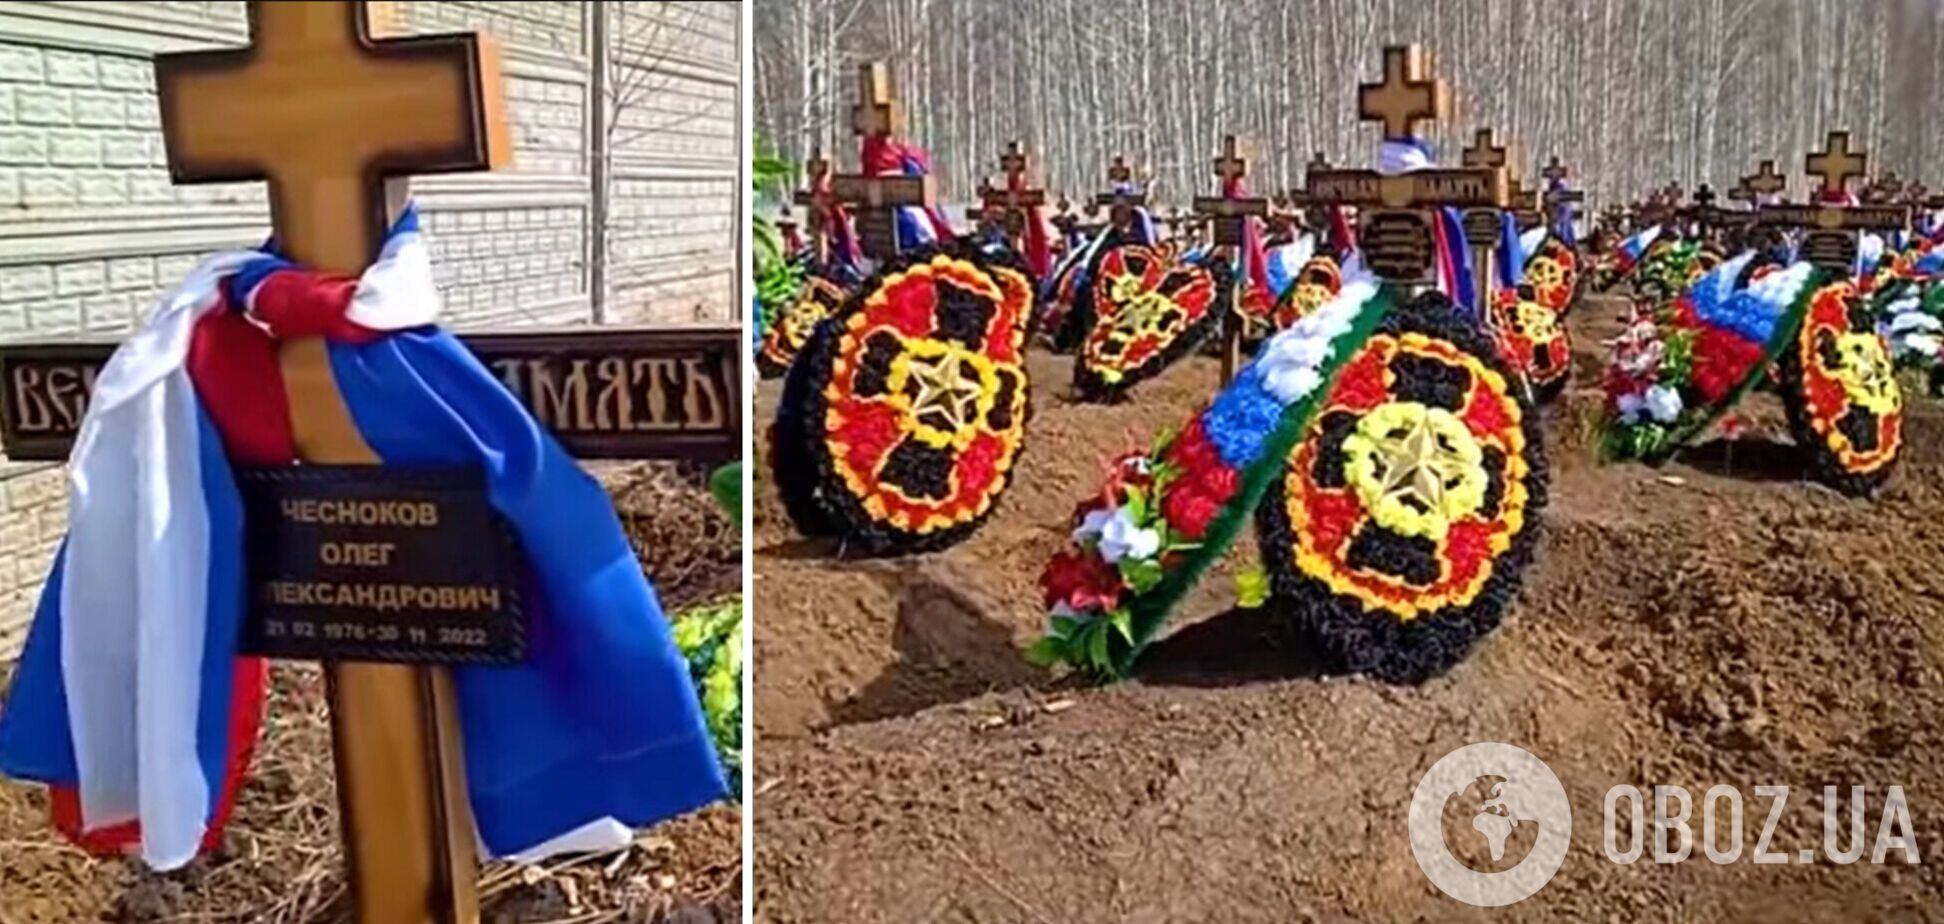 Сотни могил с символикой ЧВК 'Вагнер': в Новосибирске обнаружили массовое захоронение. Видео